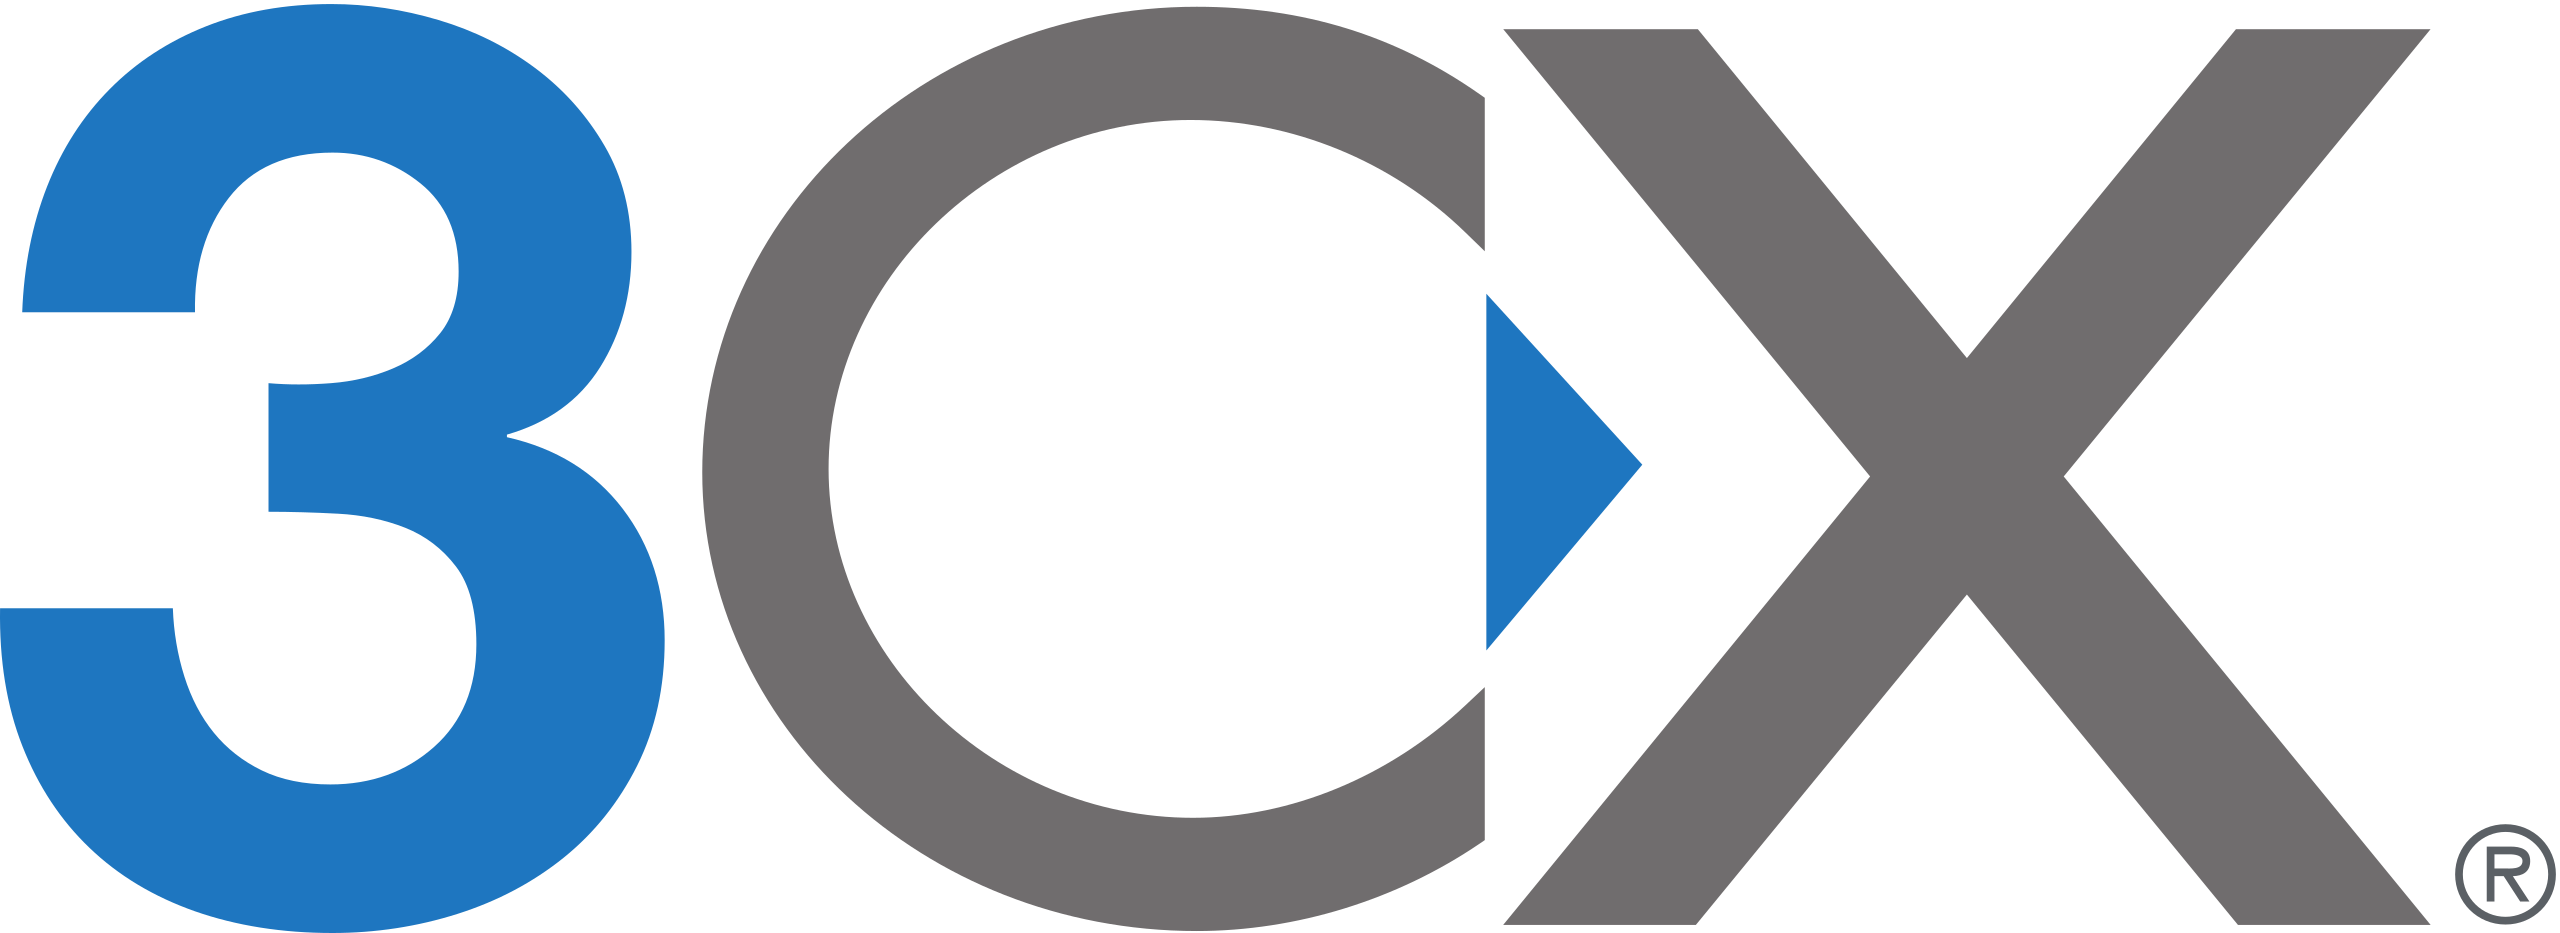 3CX_logo on white